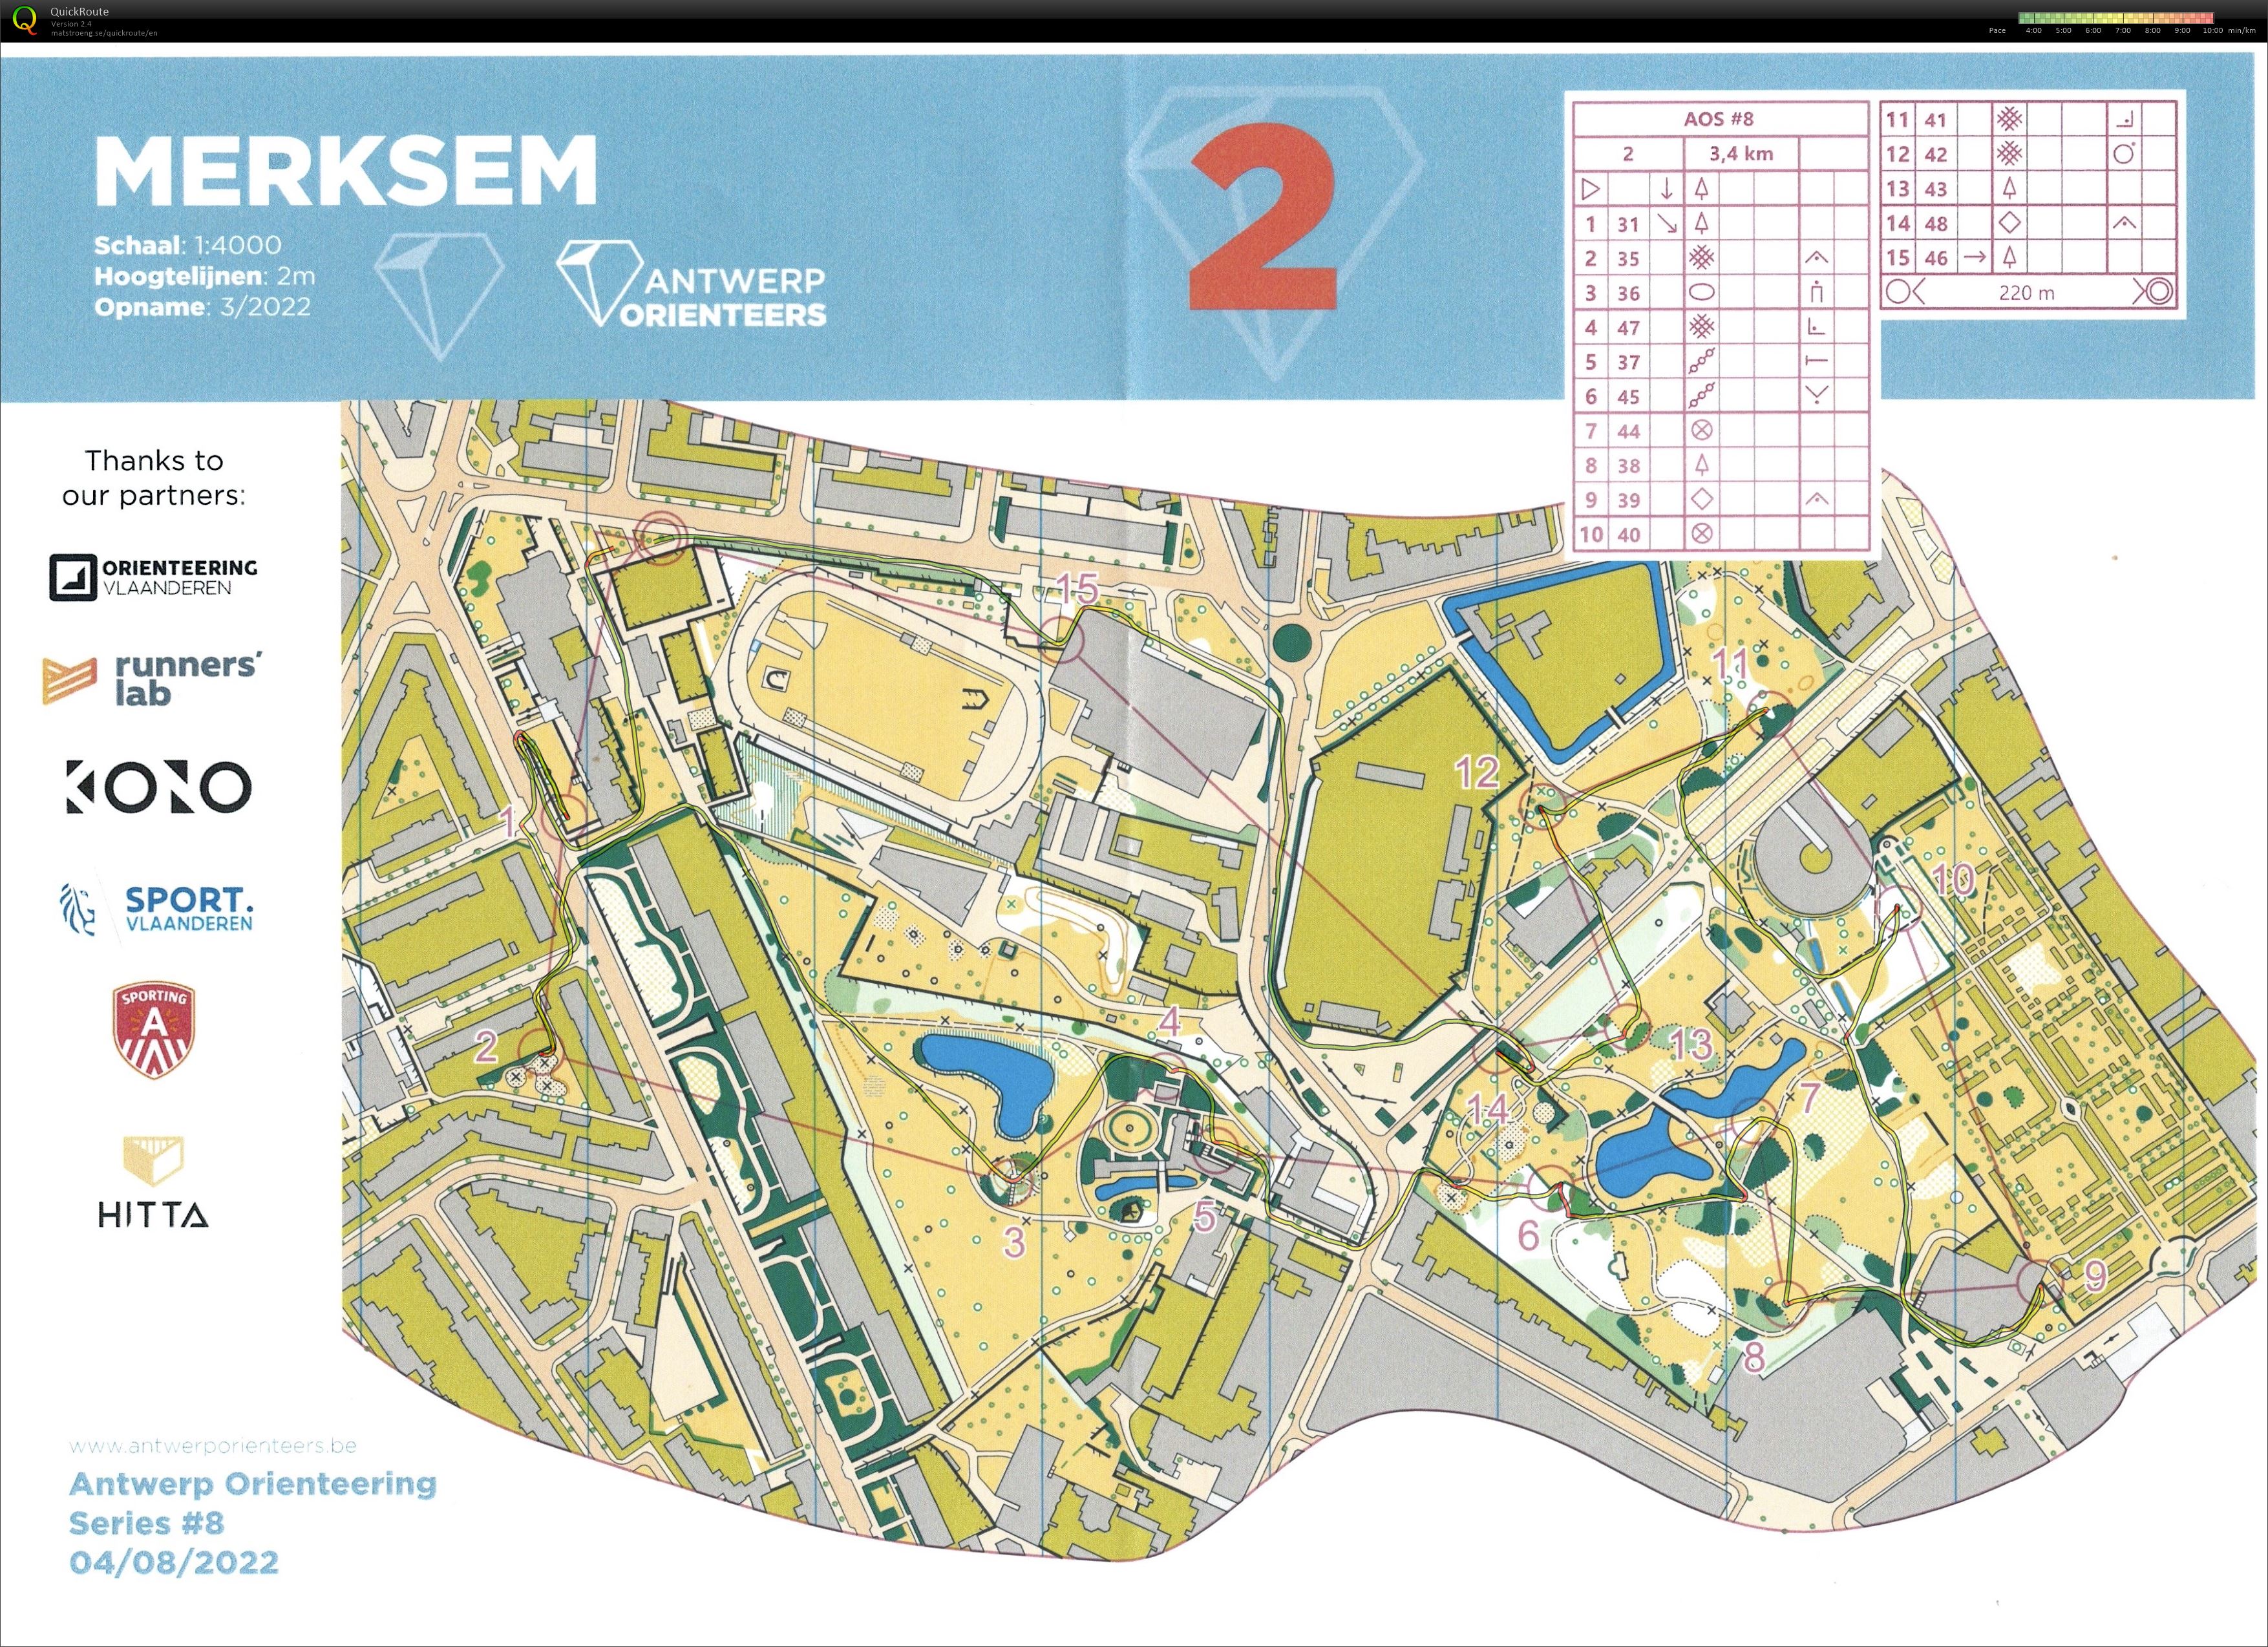 Antwerp Orienteering Series - Merksem - 2 (04.08.2022)